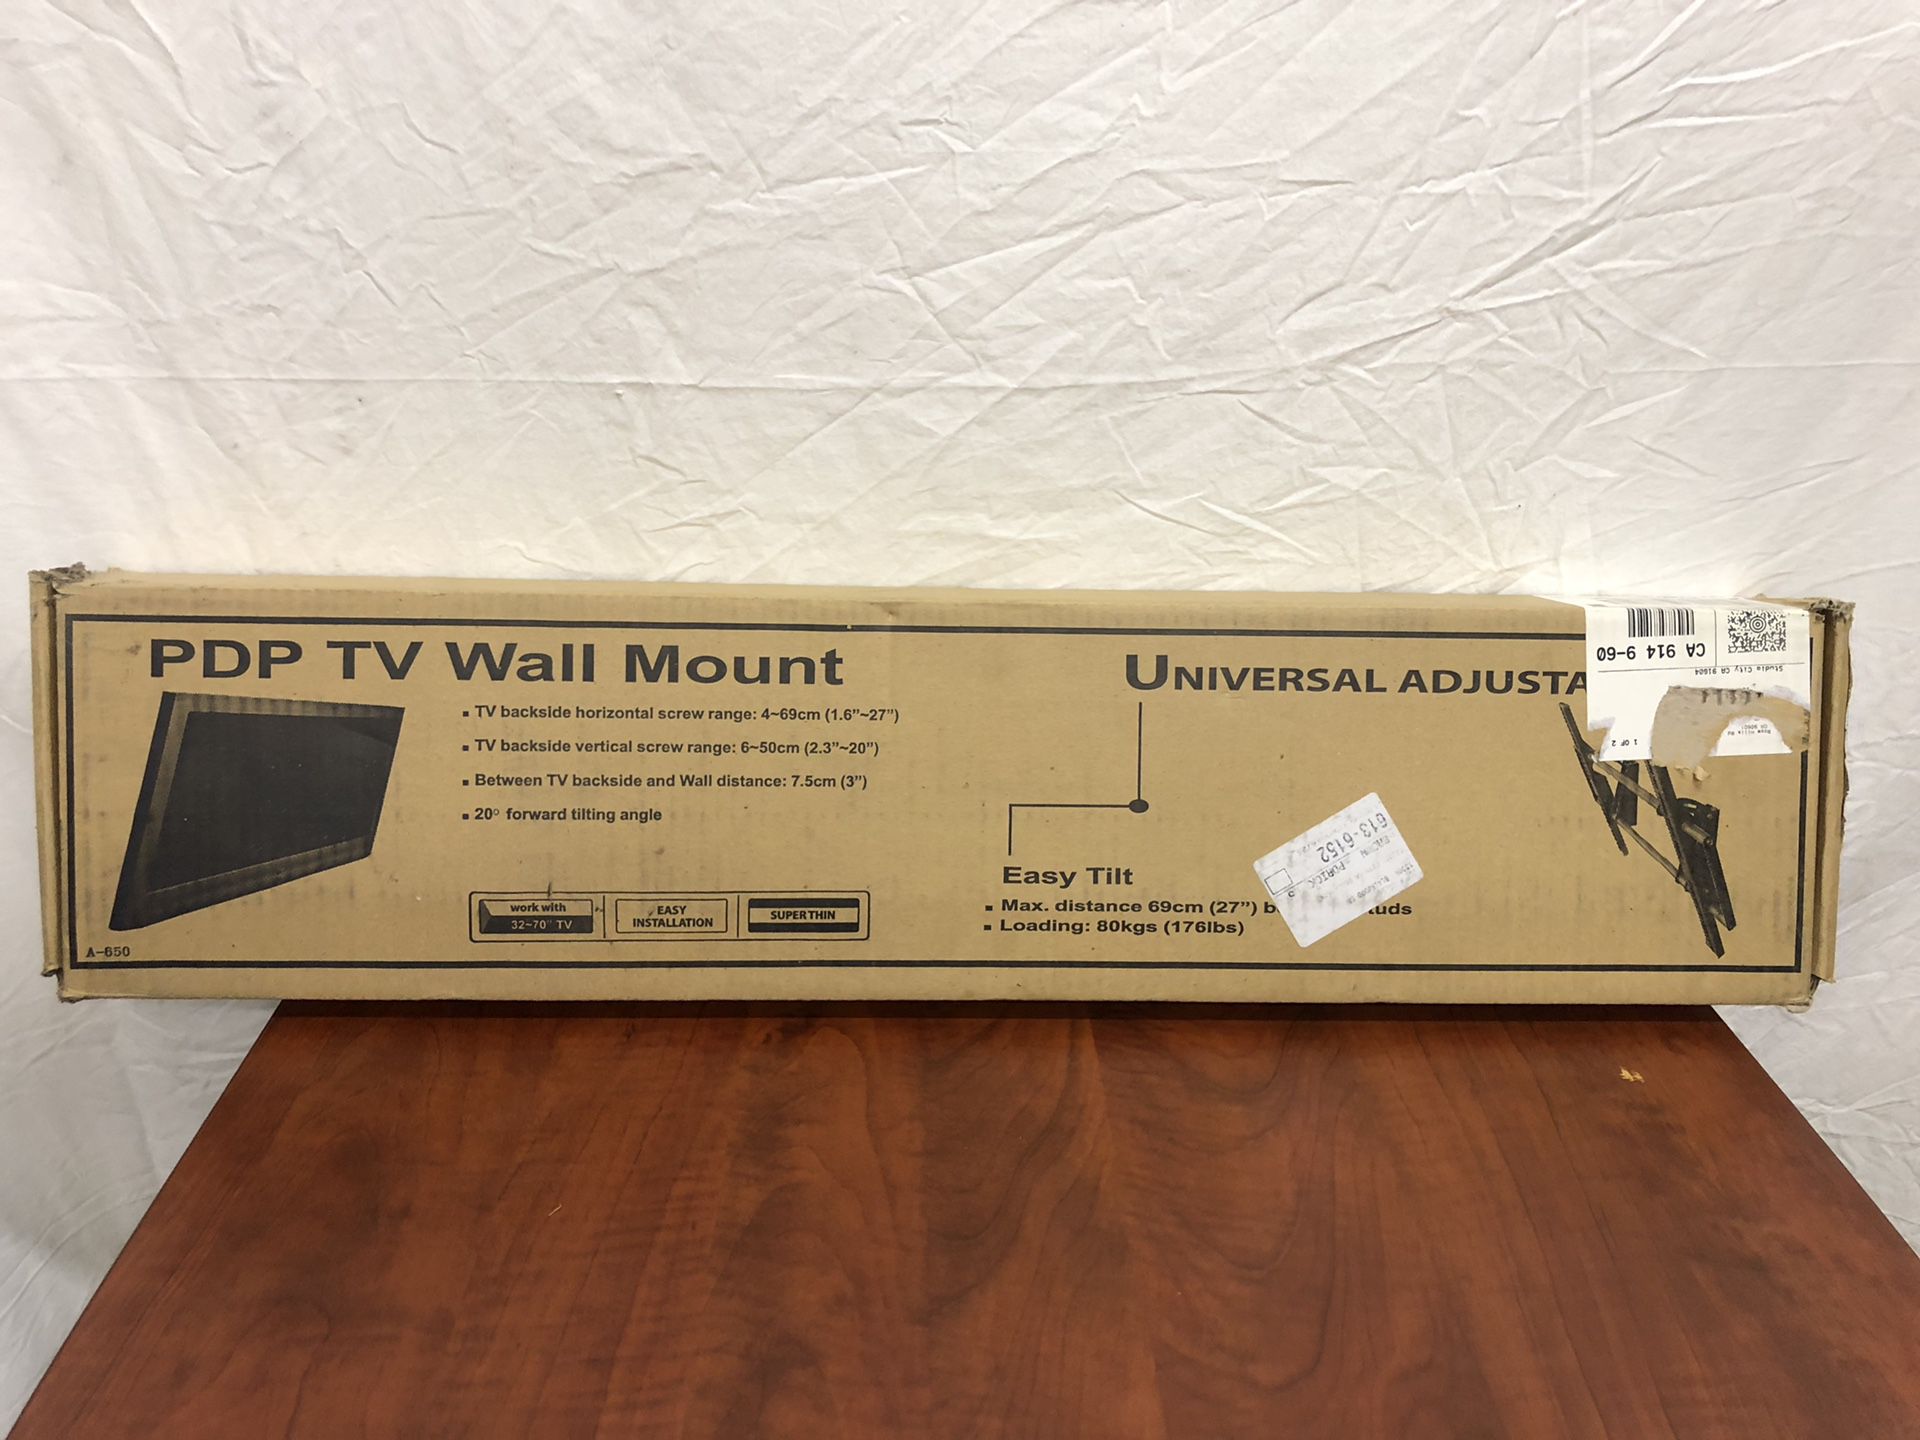 TV universal adjustable wall mount